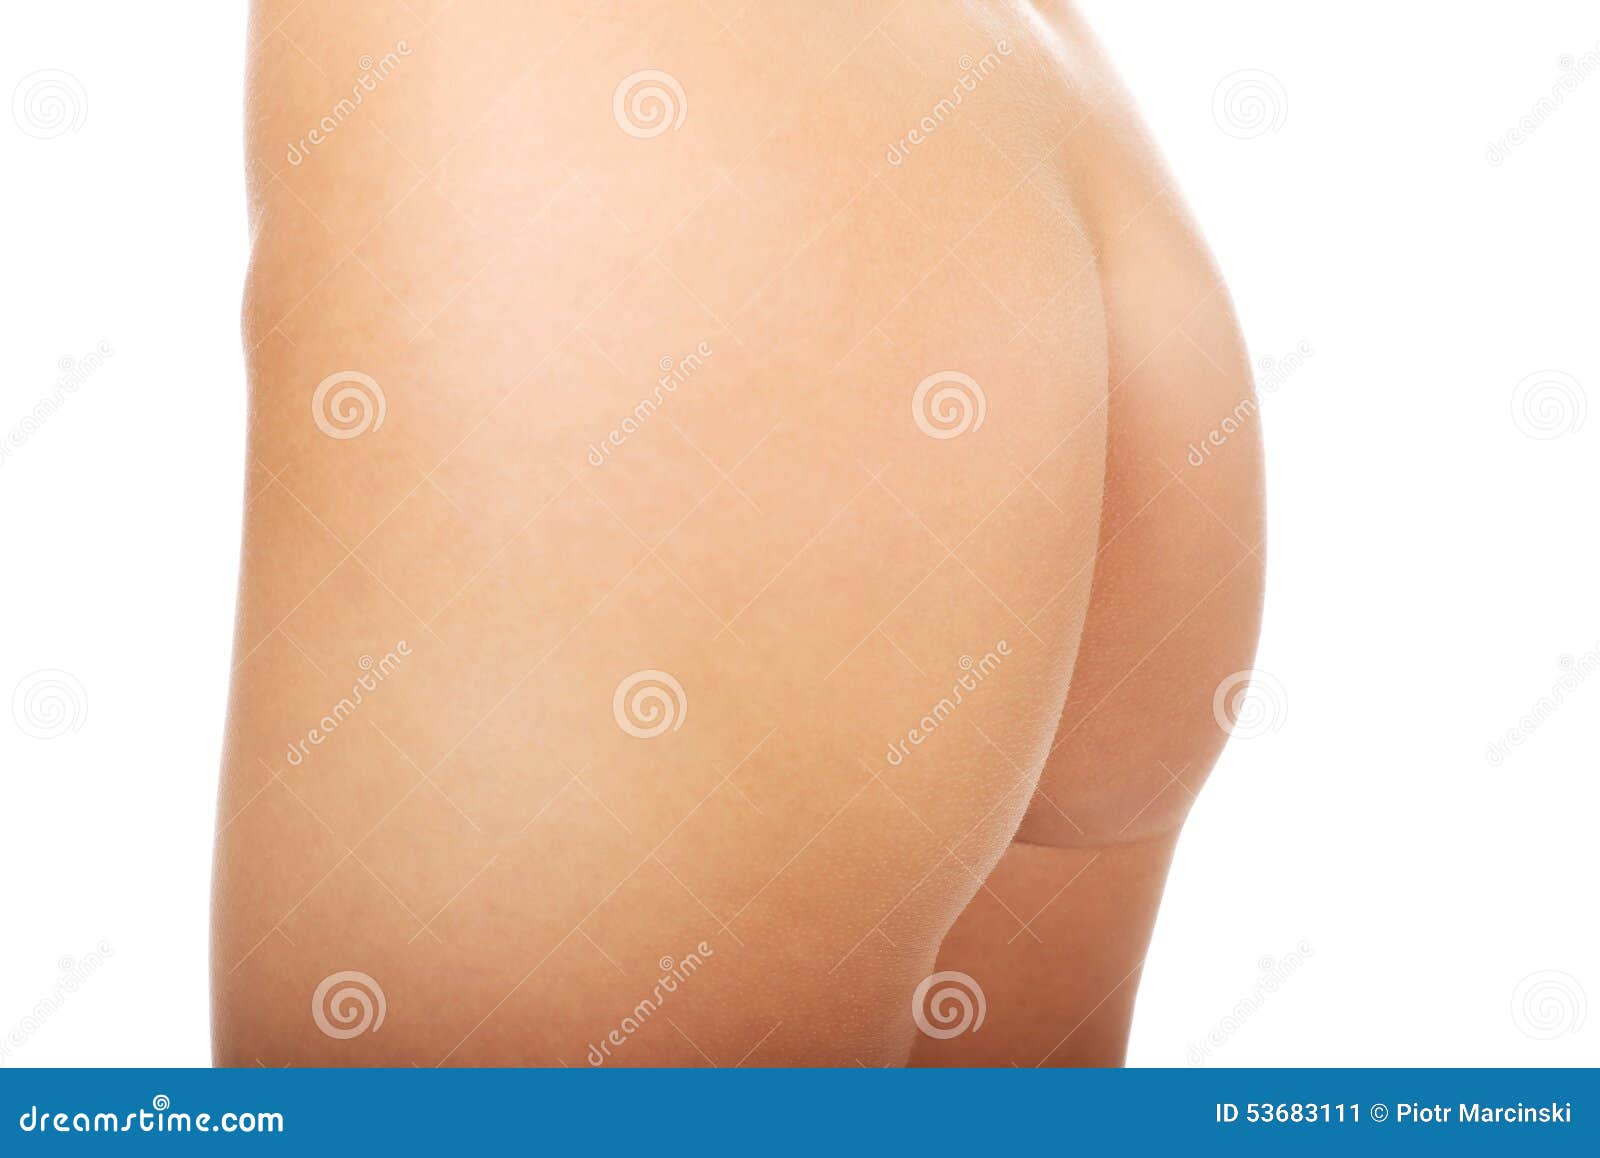 carmella barker add beautiful naked female ass photo